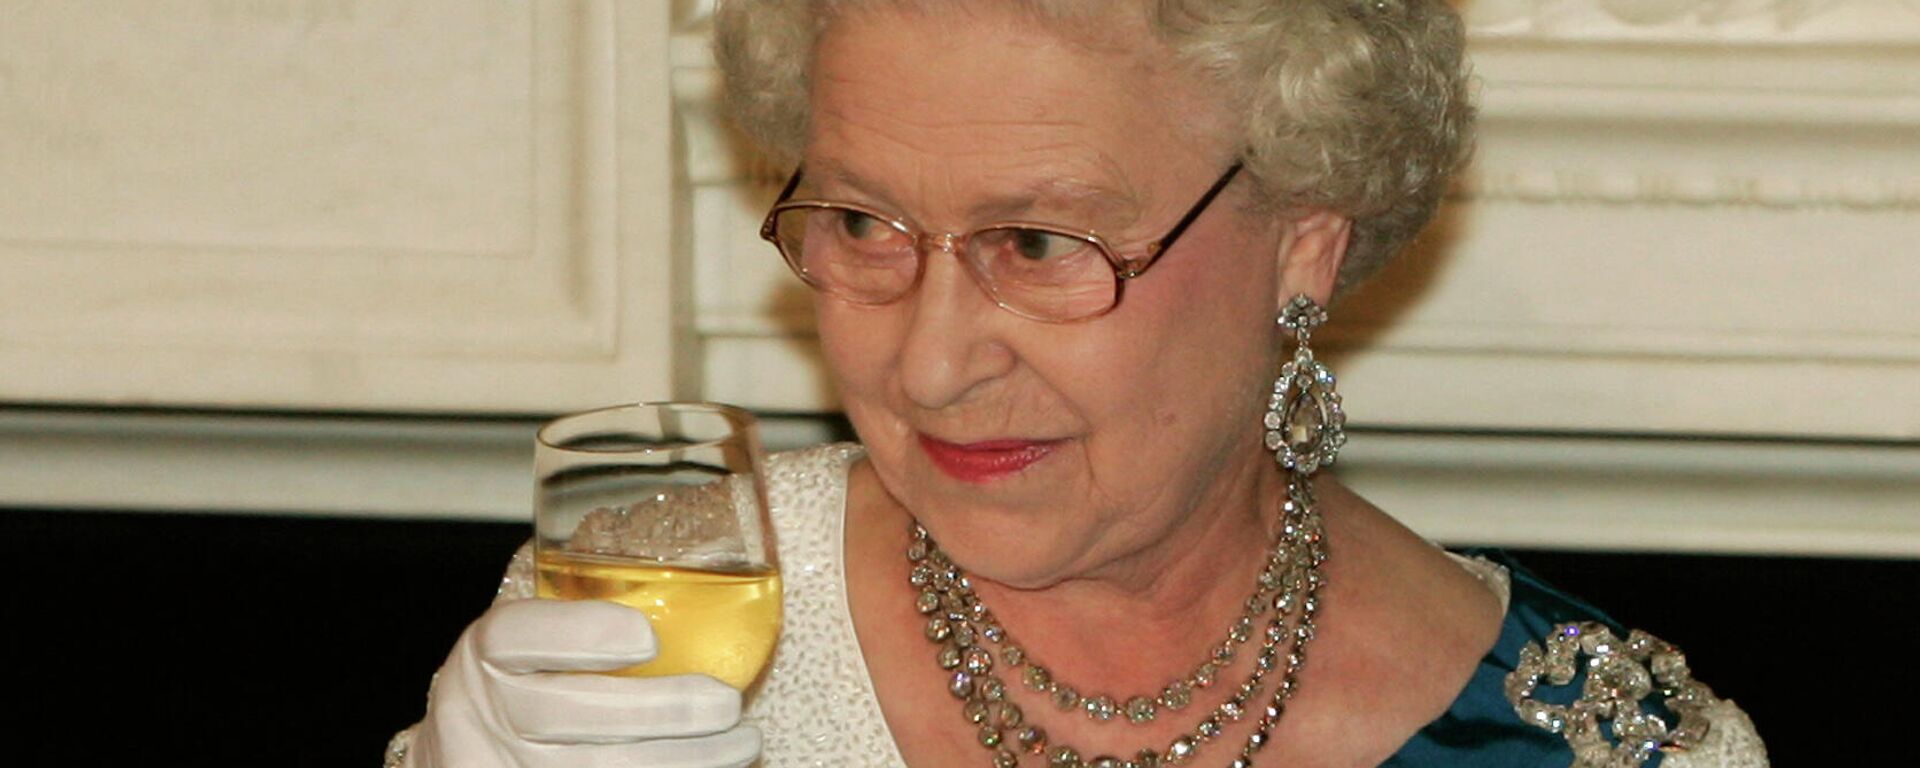 La reina Isabel II levanta su copa después de hacer un brindis durante una cena de Estado en la Casa Blanca (EEUU) en 2007 - Sputnik Mundo, 1920, 16.10.2021